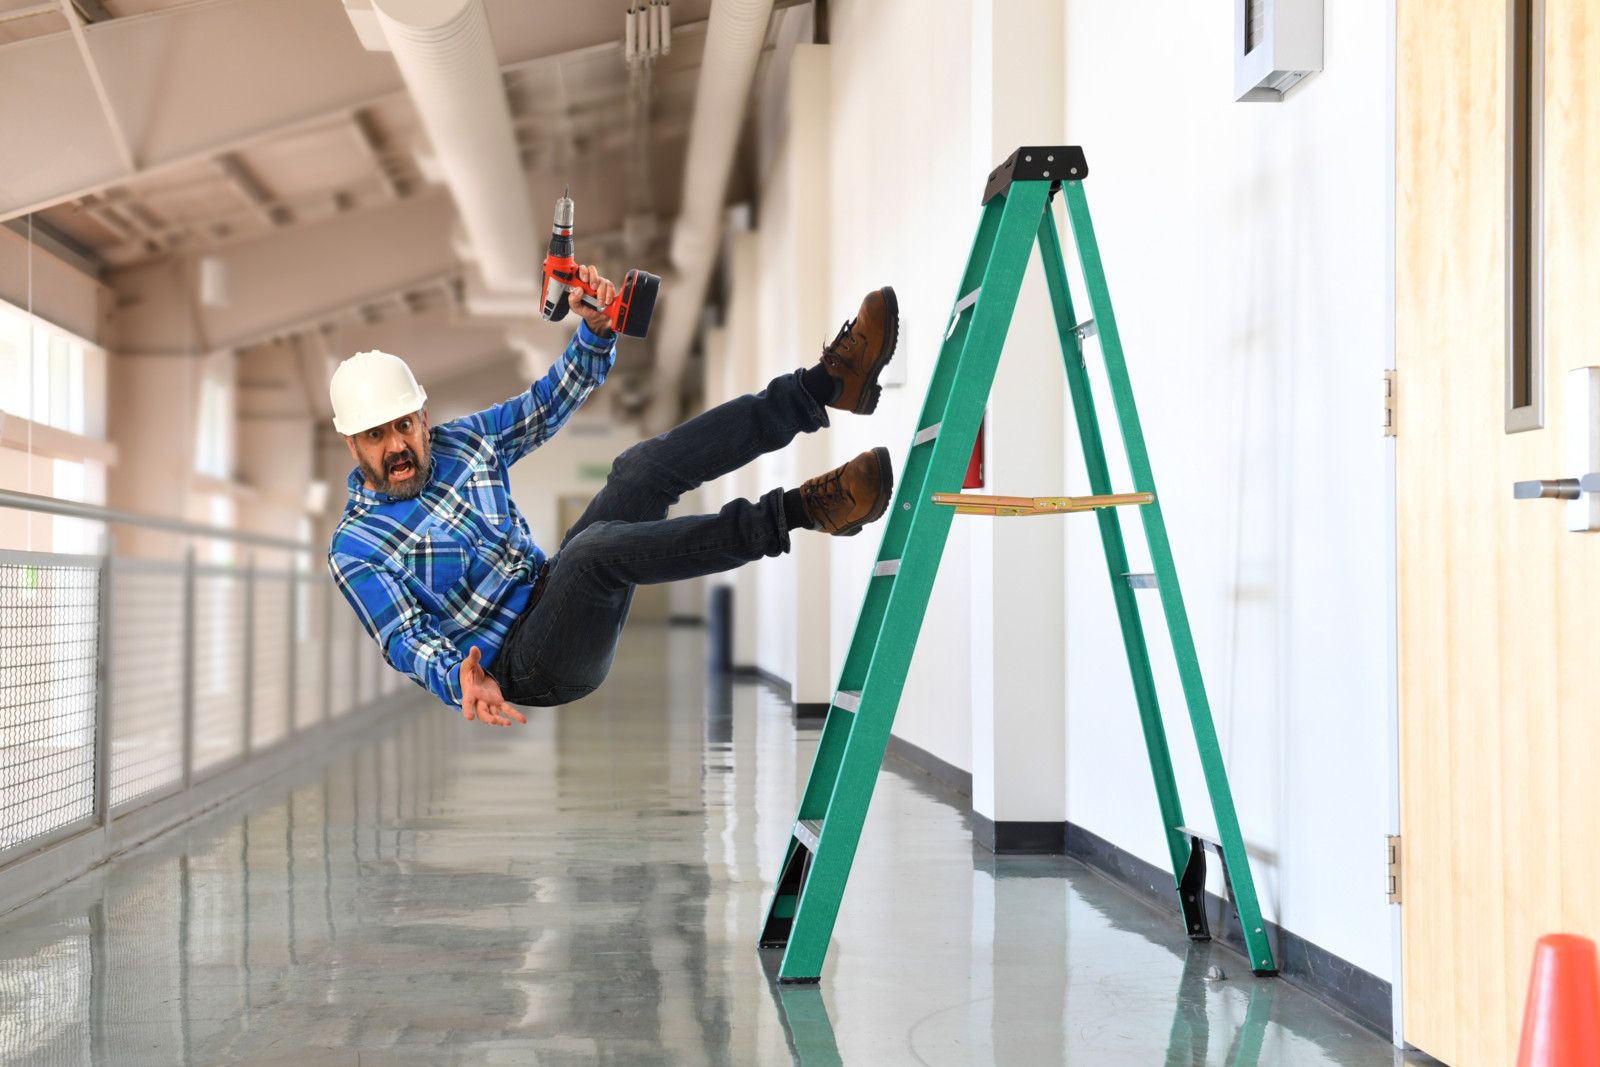 Leiterunfälle gehören zu den häufigen Arbeitsunfällen auf der Baustelle.